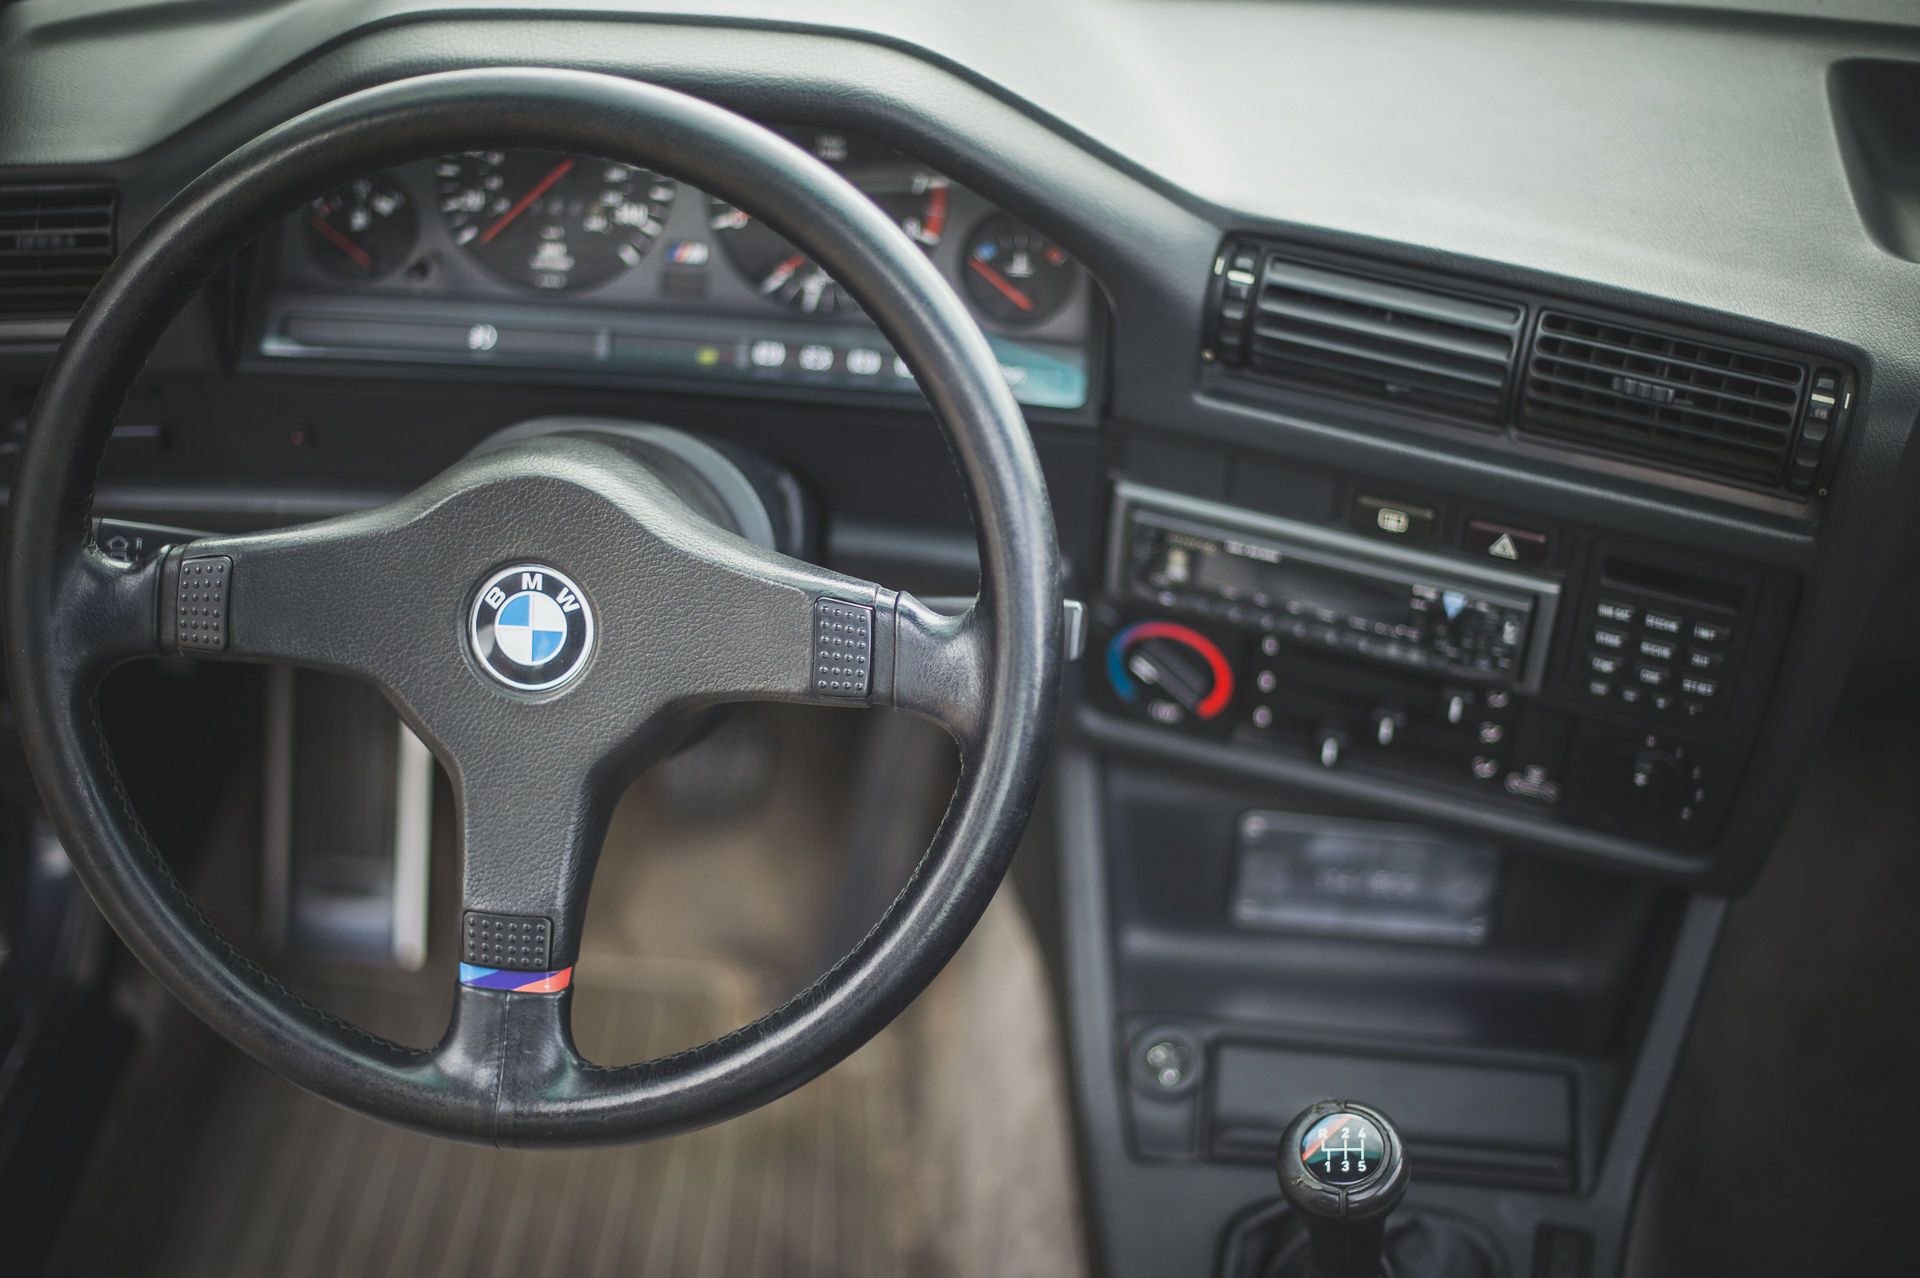 BMW M3 Evolution II, которой исполнилось 32 года, готовы продать за любую сумму.